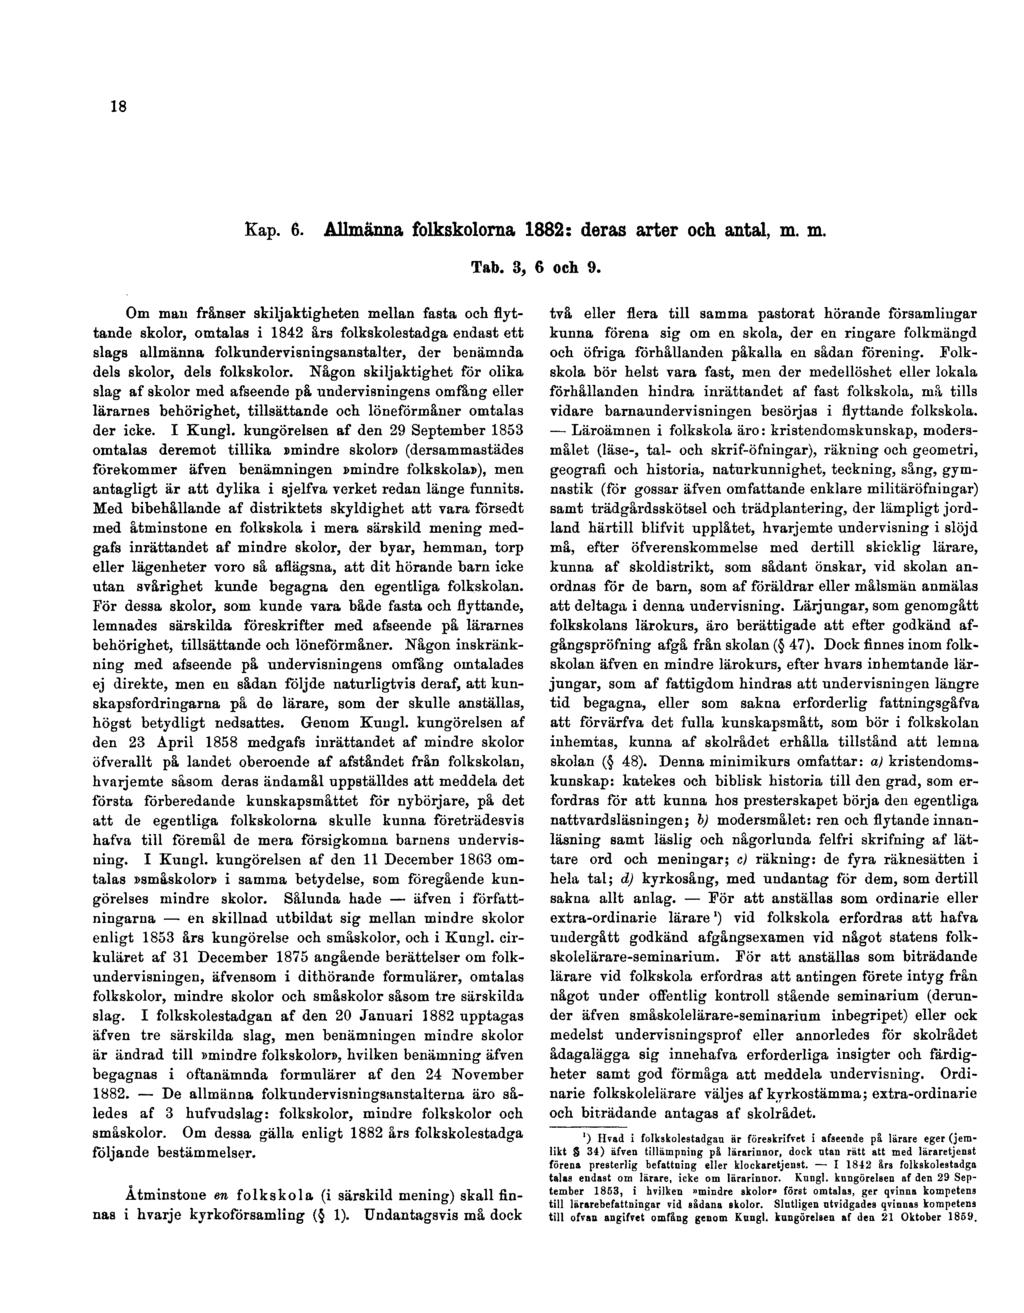 18 Kap. 6. Allmänna folkskolorna 1882: deras arter och antal, m. m. Tab. 3, 6 och. 9.